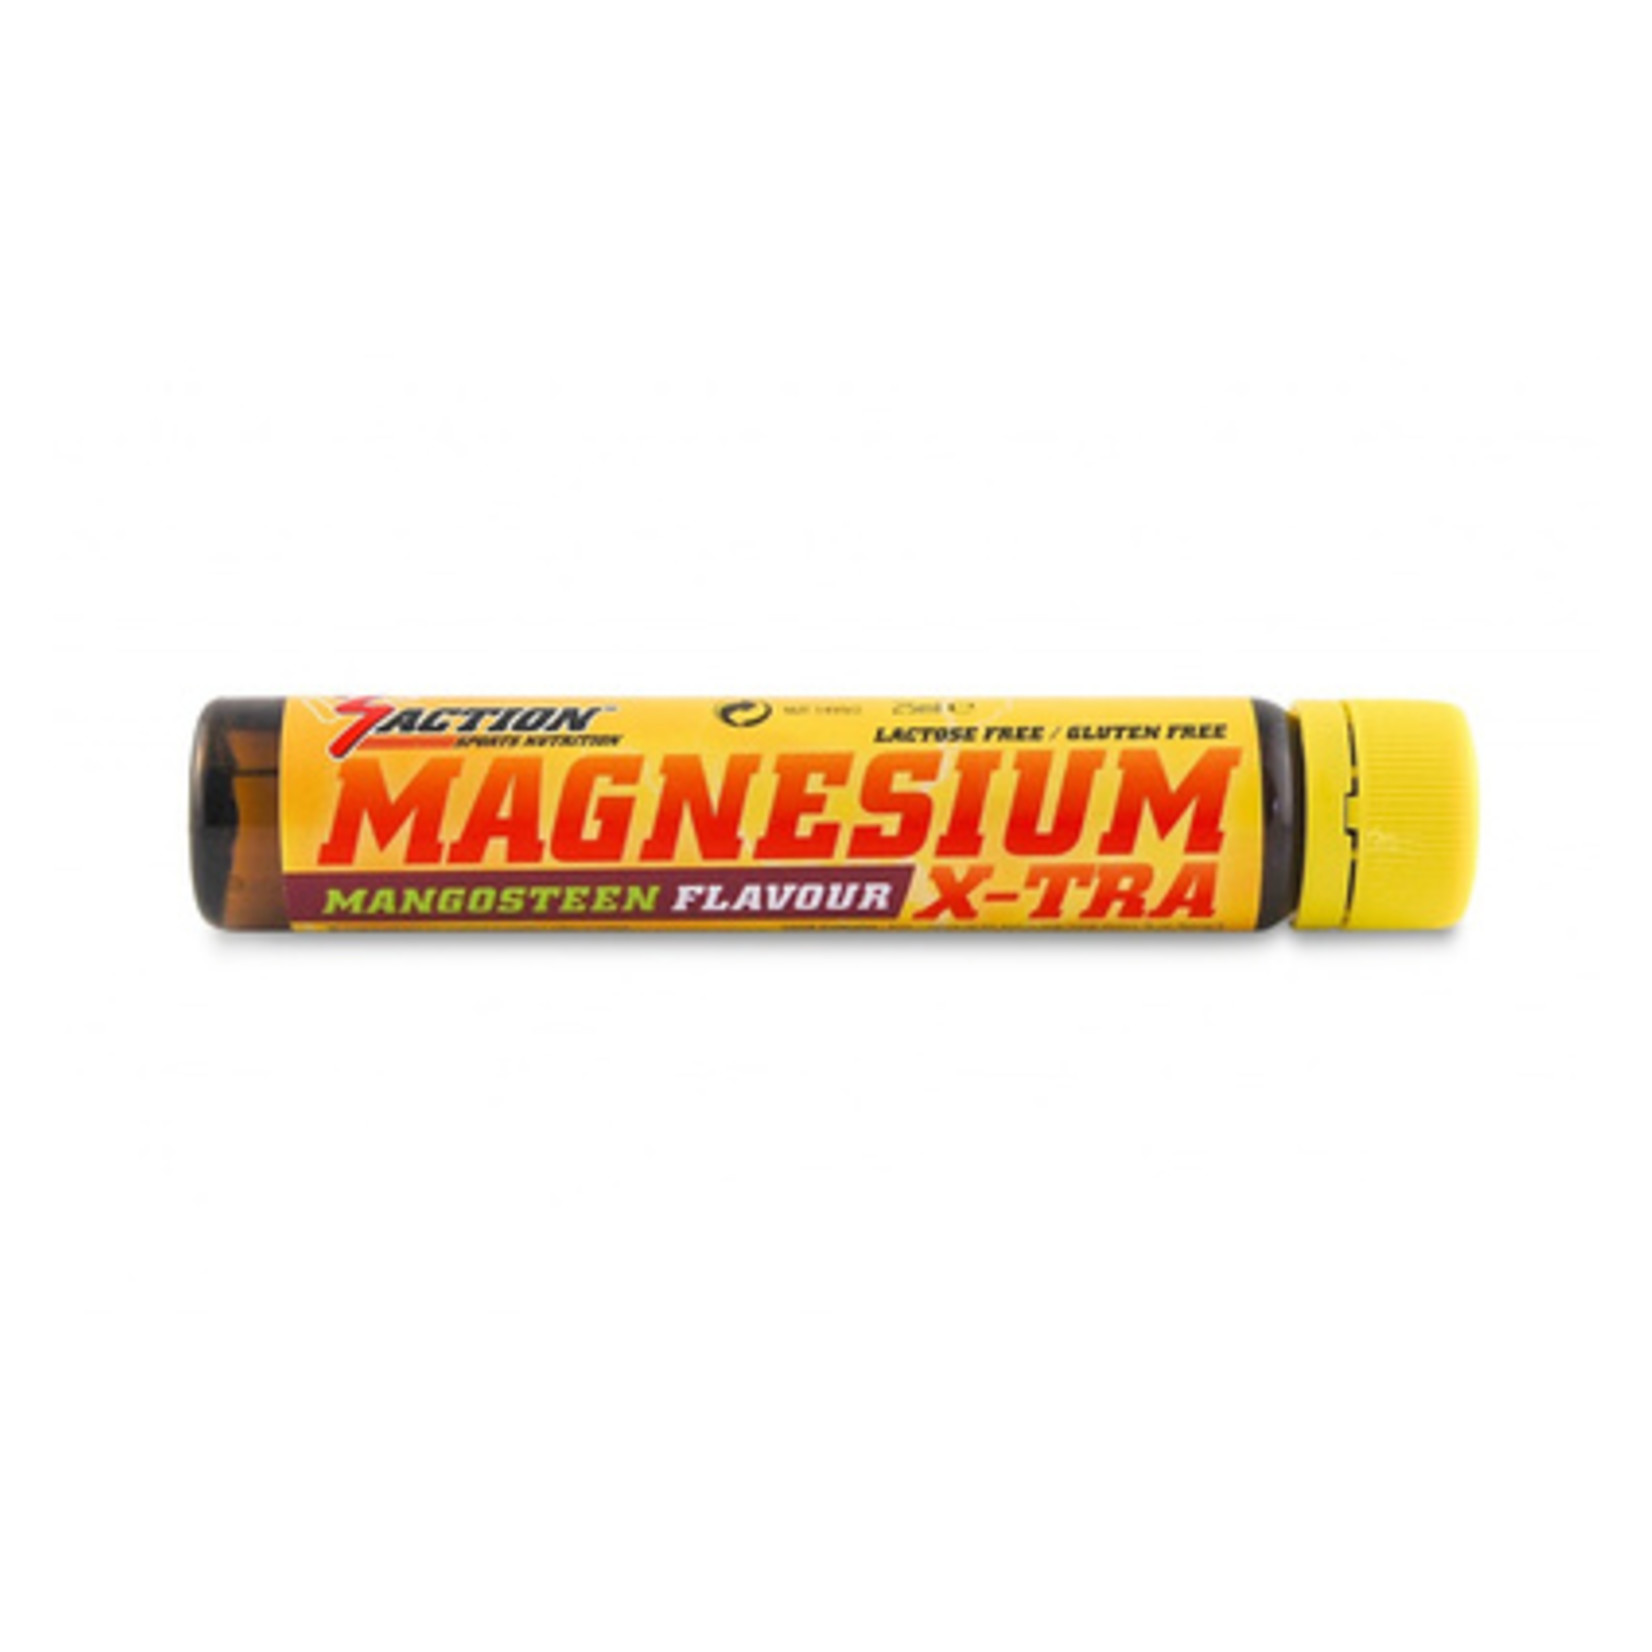 3Action 'Magnesium'